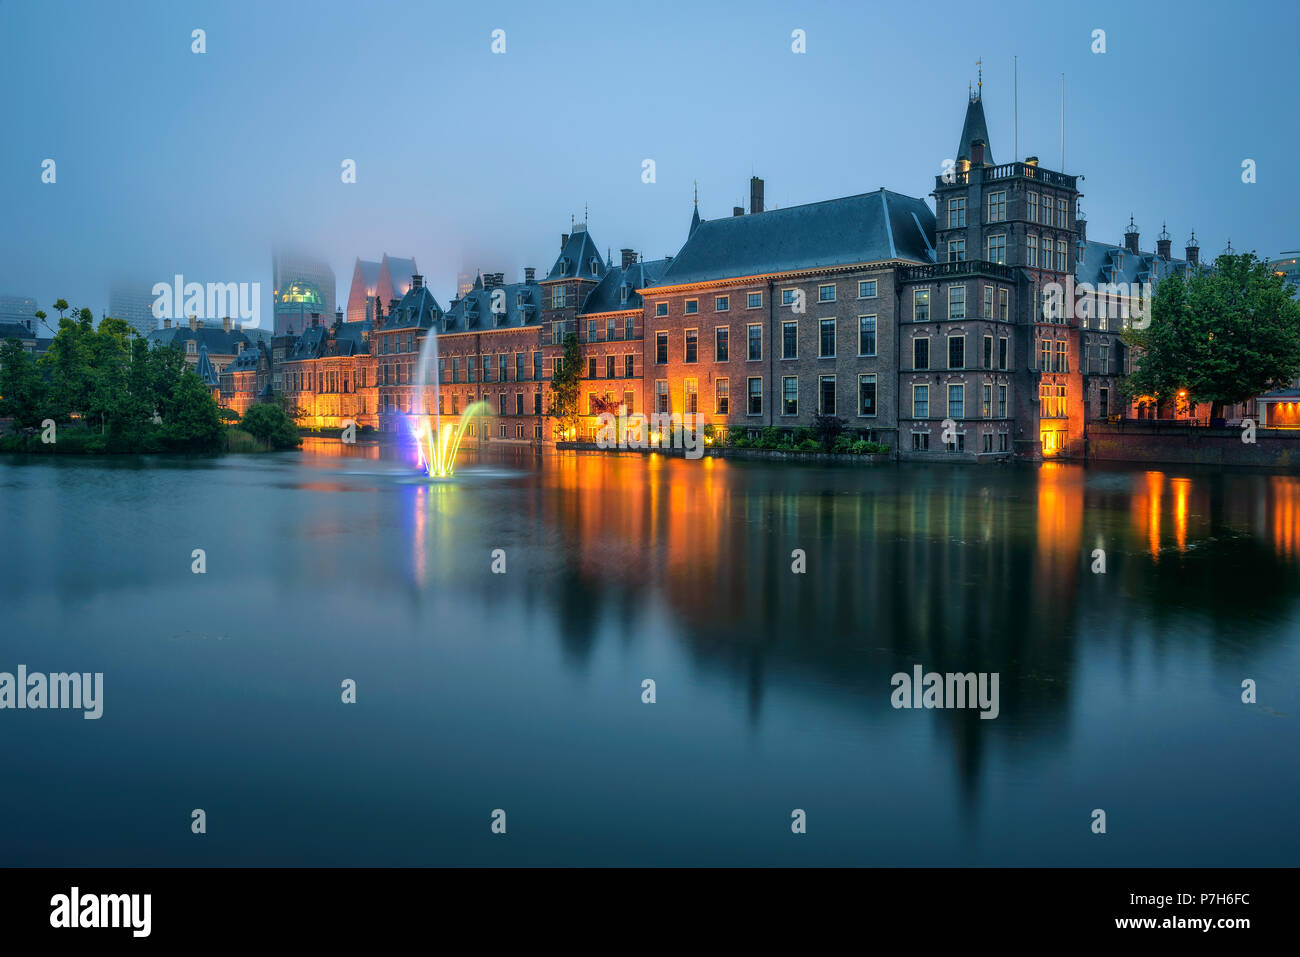 Il Binnenhof palace in una serata di nebbia in Aia, Paesi Bassi. Essa ospita il parlamento olandese e gli uffici governativi. Lunga esposizione. Foto Stock